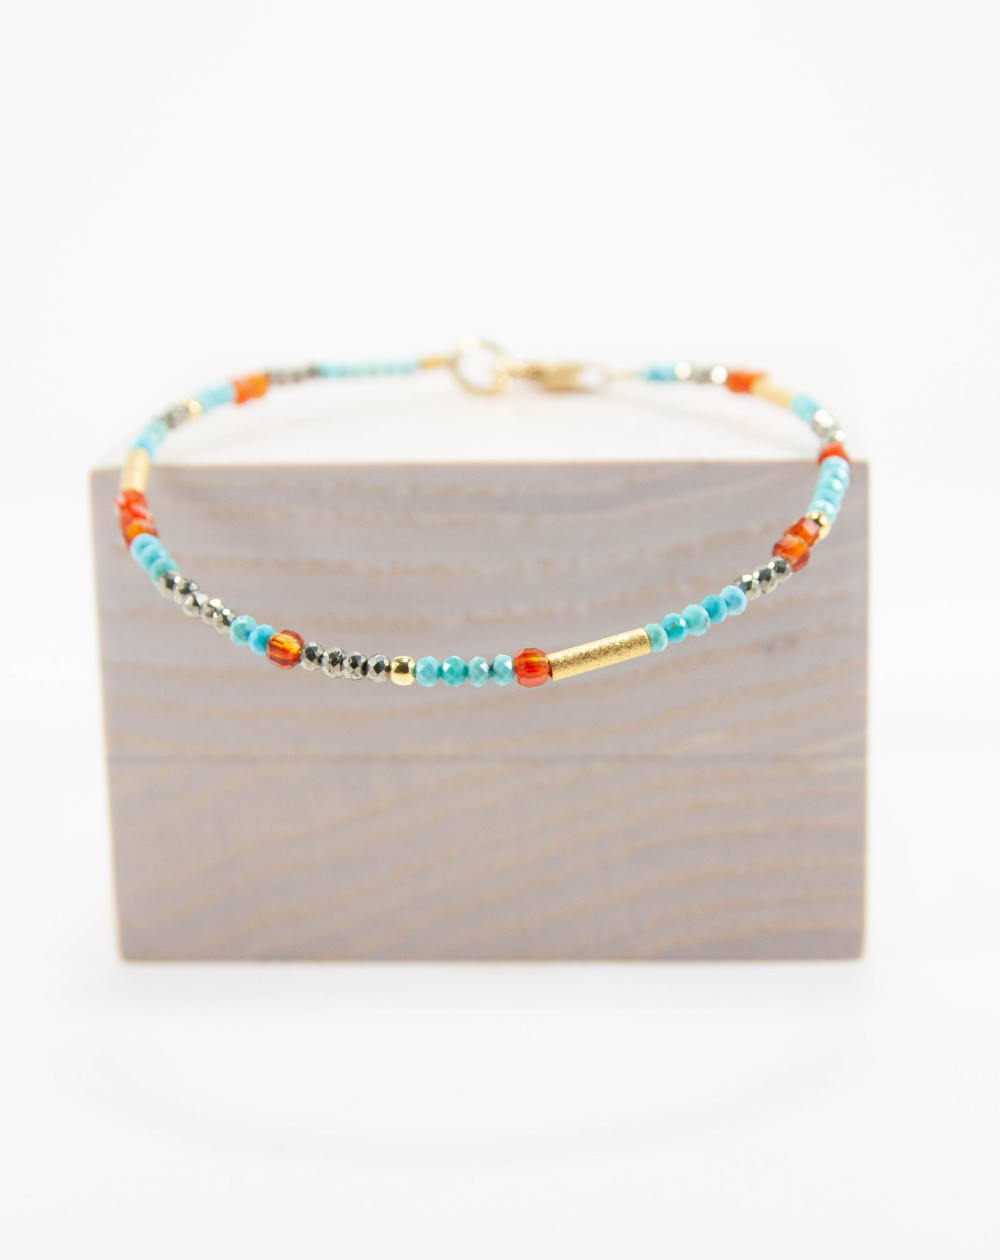 Bracelet Turquoise Pyrite Cornaline, collection épure, Sanùk Création, Atelier Boutique Bayonne